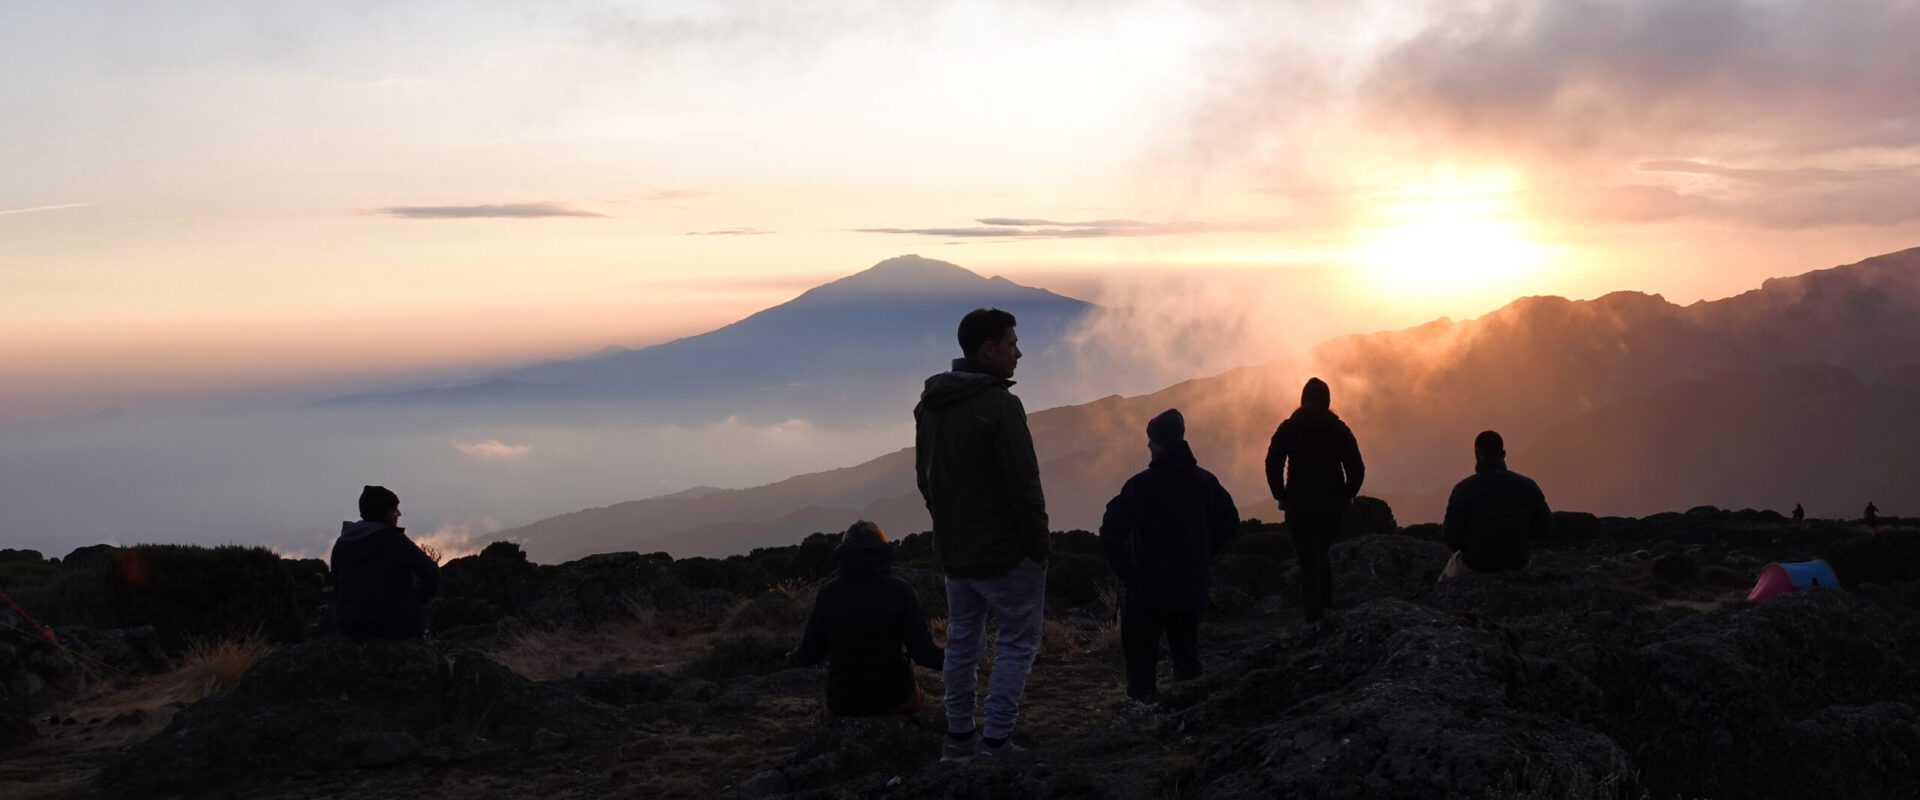 10 Kilimanjaro Myths Debunked